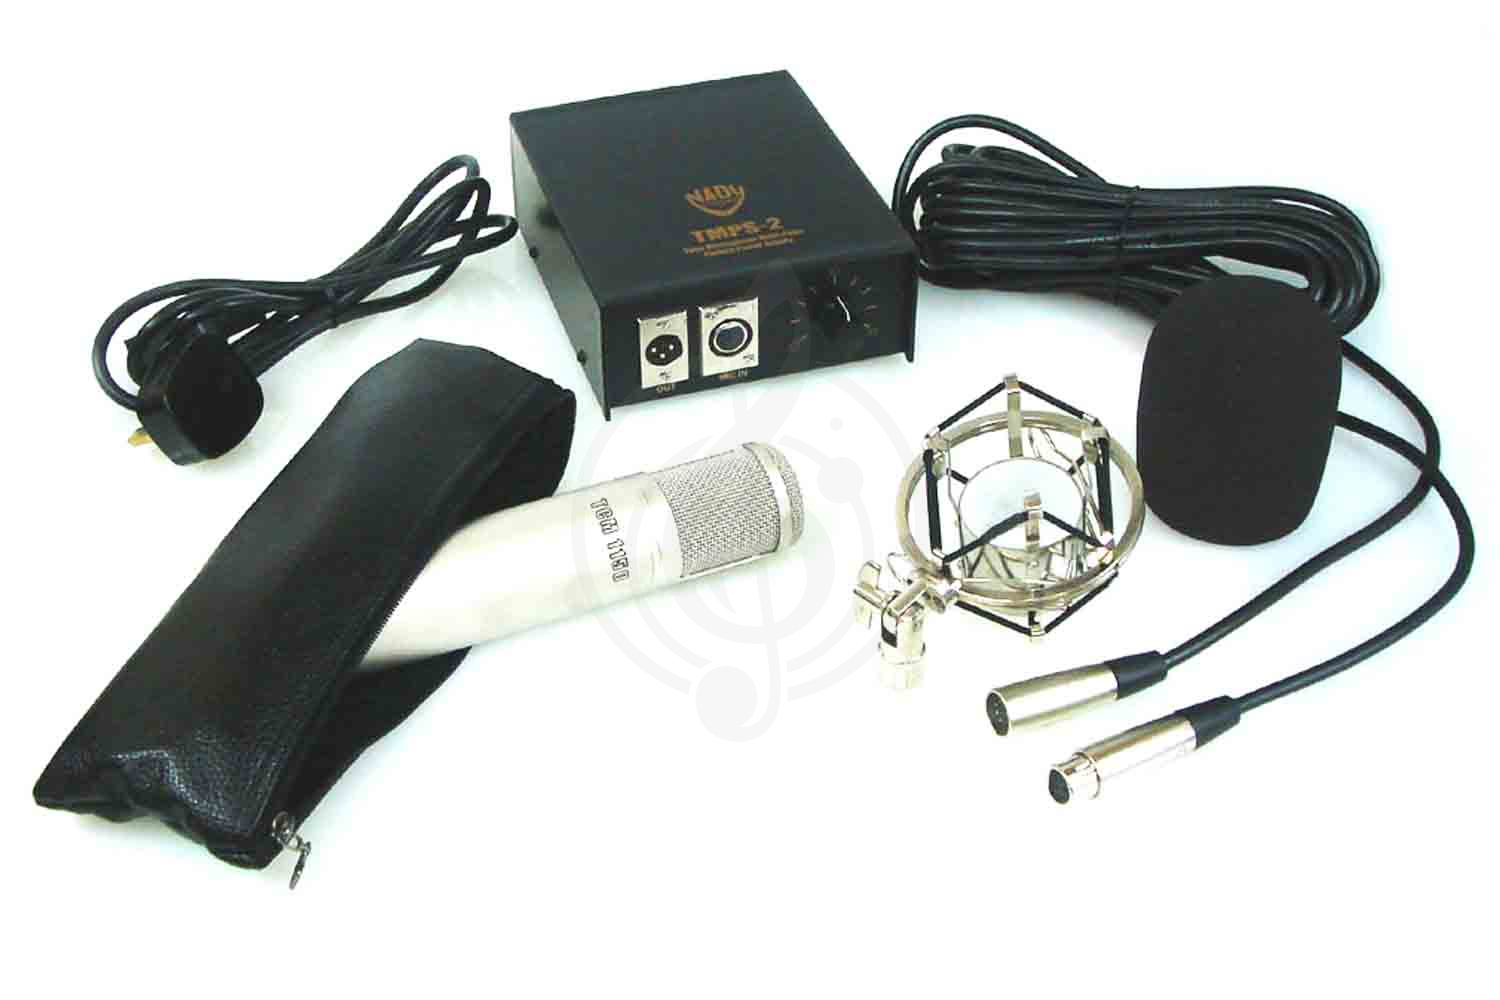 Ламповый студийный микрофон Ламповые студийные микрофоны Nady Nady TCM 1150 Studio Mic - Студийный ламповый микрофон TCM 1150 Studio Mic - фото 3